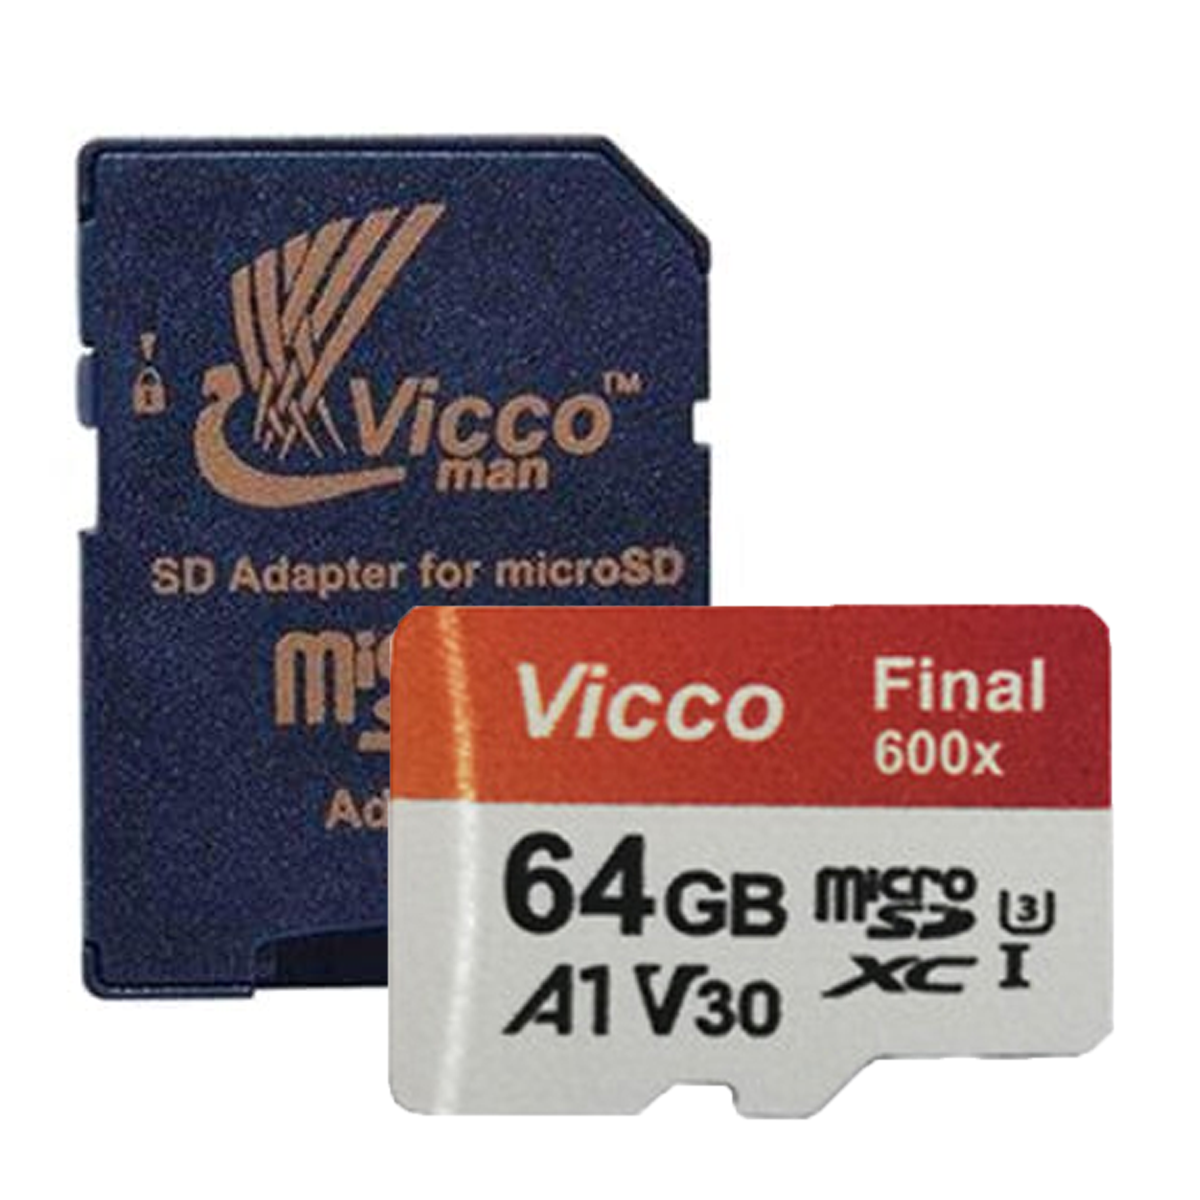 کارت حافظه microSDXC ویکومن مدل Final 600X کلاس 10 استاندارد UHS-I U3 سرعت 90MBps ظرفیت 64 گیگابایت به همراه آداپتور -سفید